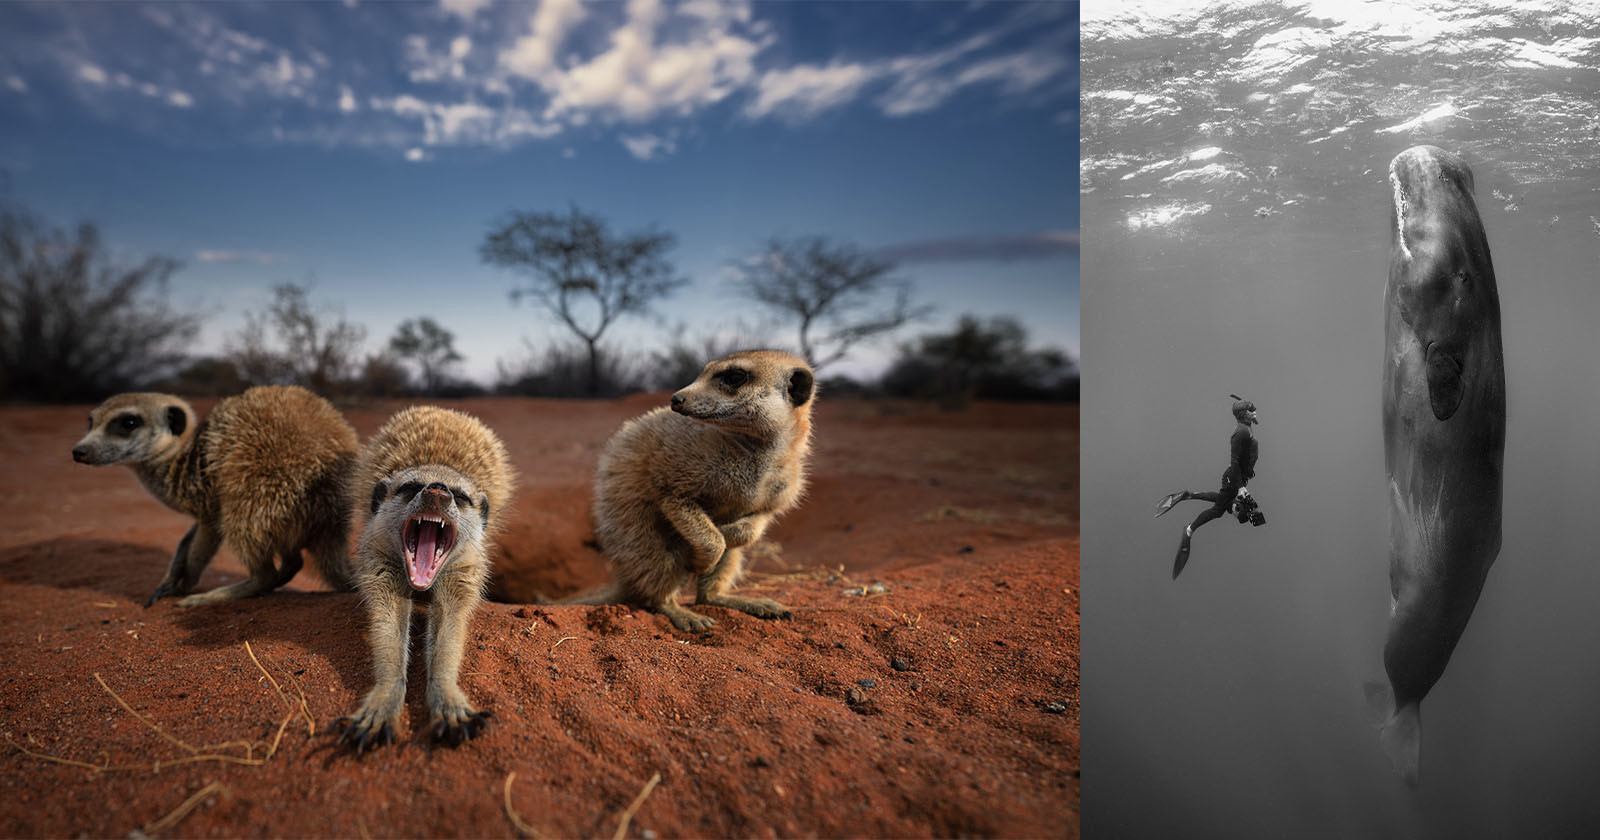  stunning nature photos sale raise money wildlife 